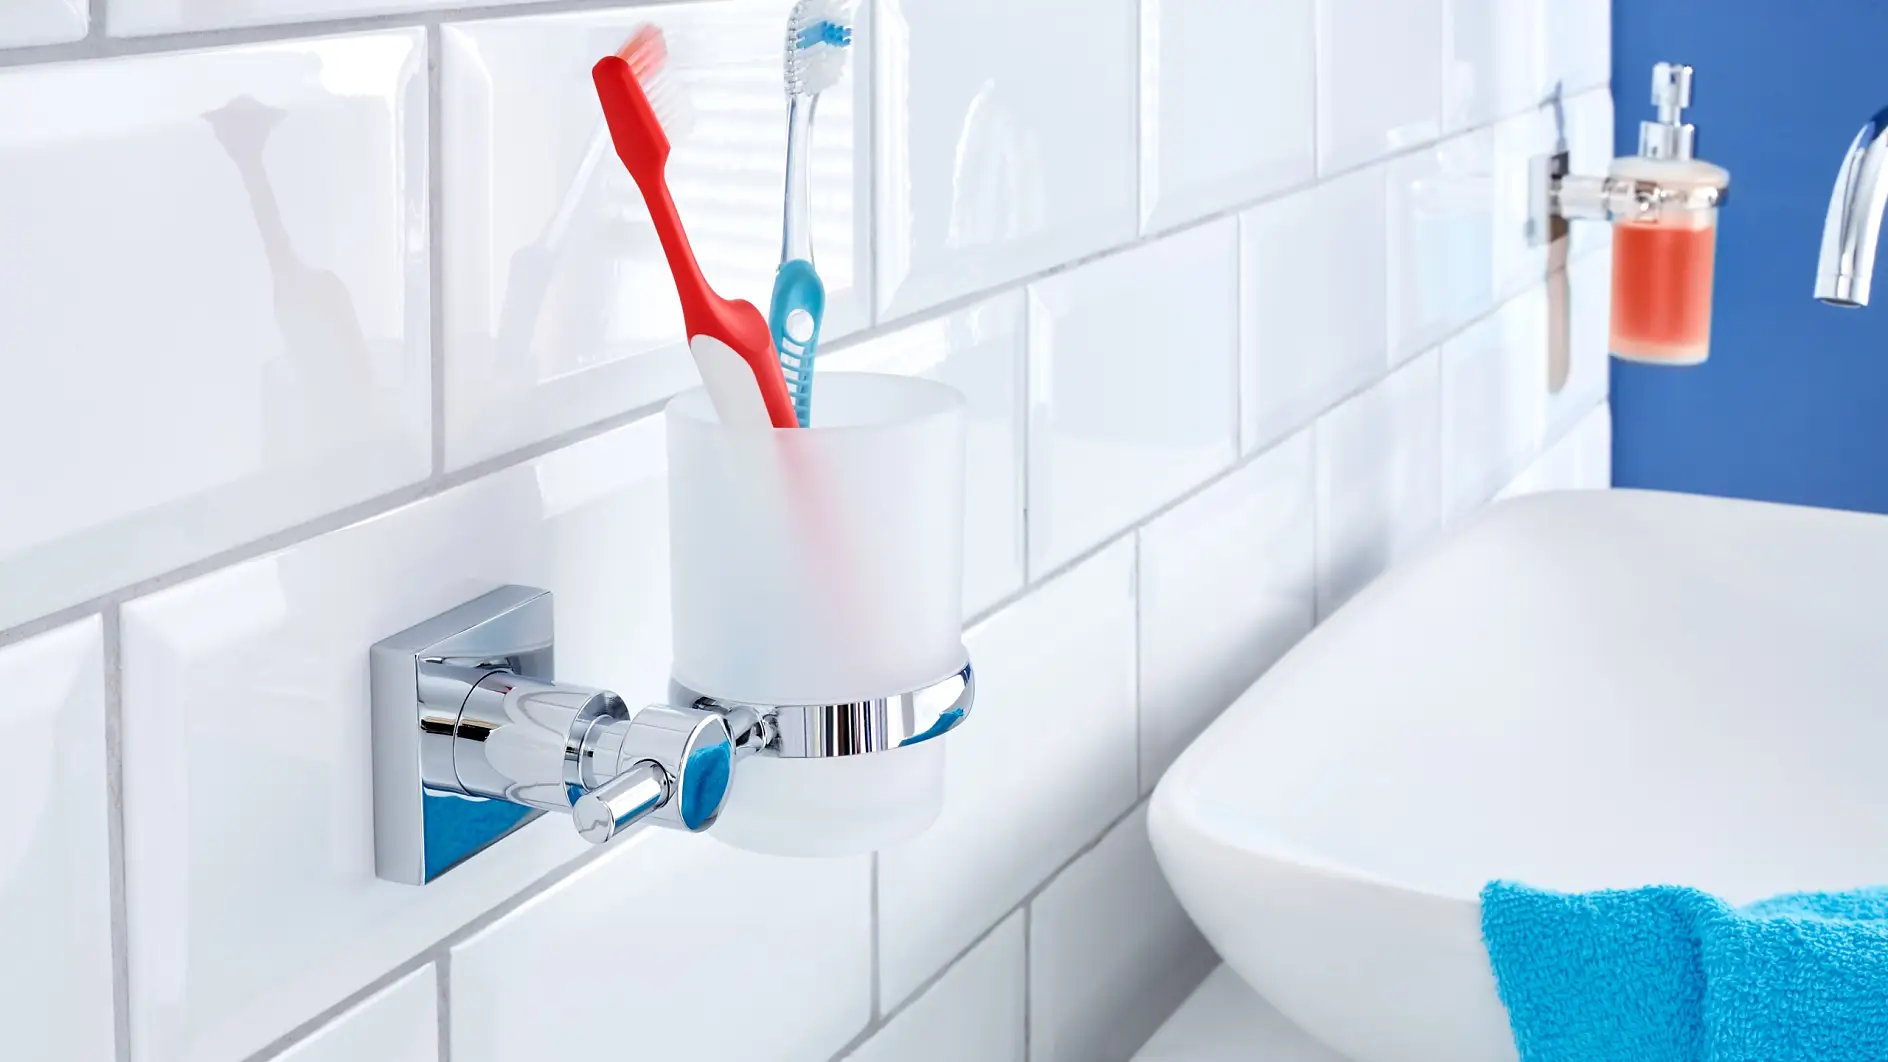 Ikke la tannglasset oppta plass på vasken. Oppbevar det der hvor det ser best ut og hører hjemme.